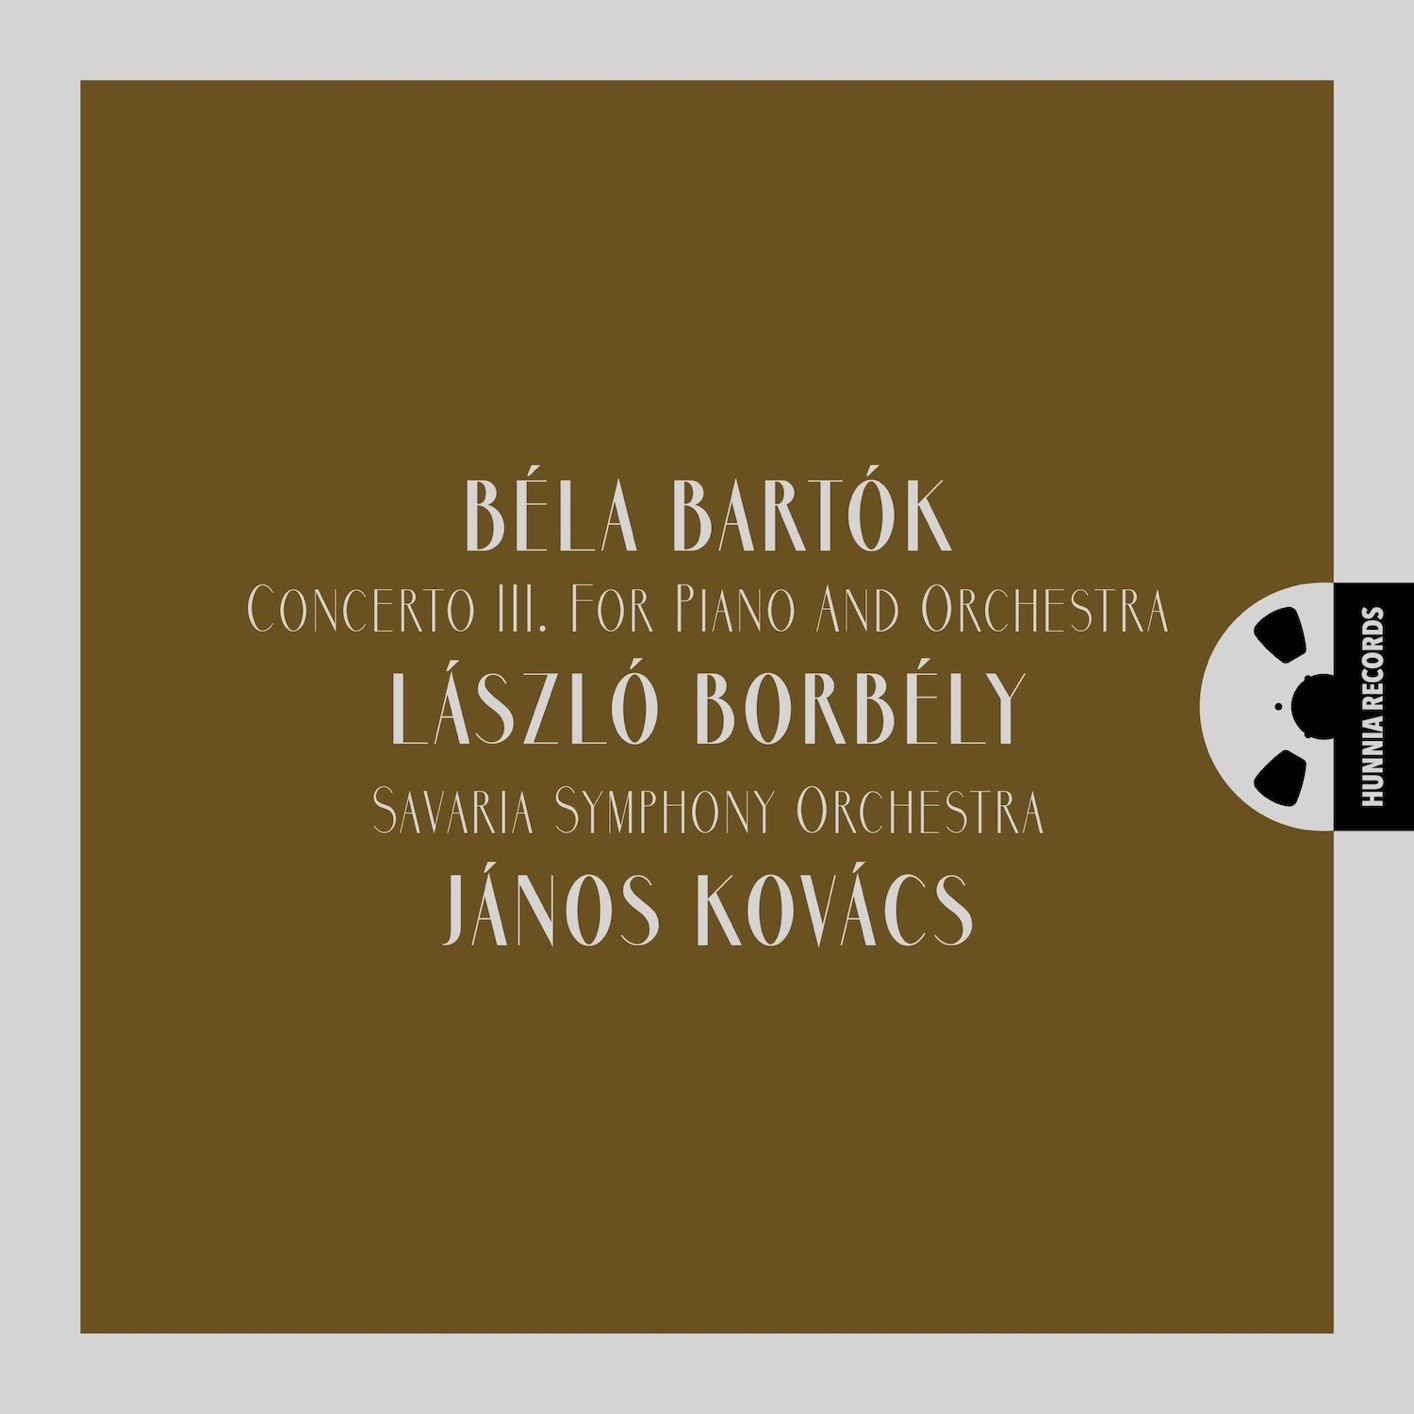 László Borbély, Savaria Symphony Orchestra, János Kovács – Concerto III for Piano and Orchestra (2023) [FLAC 24bit/192kHz]